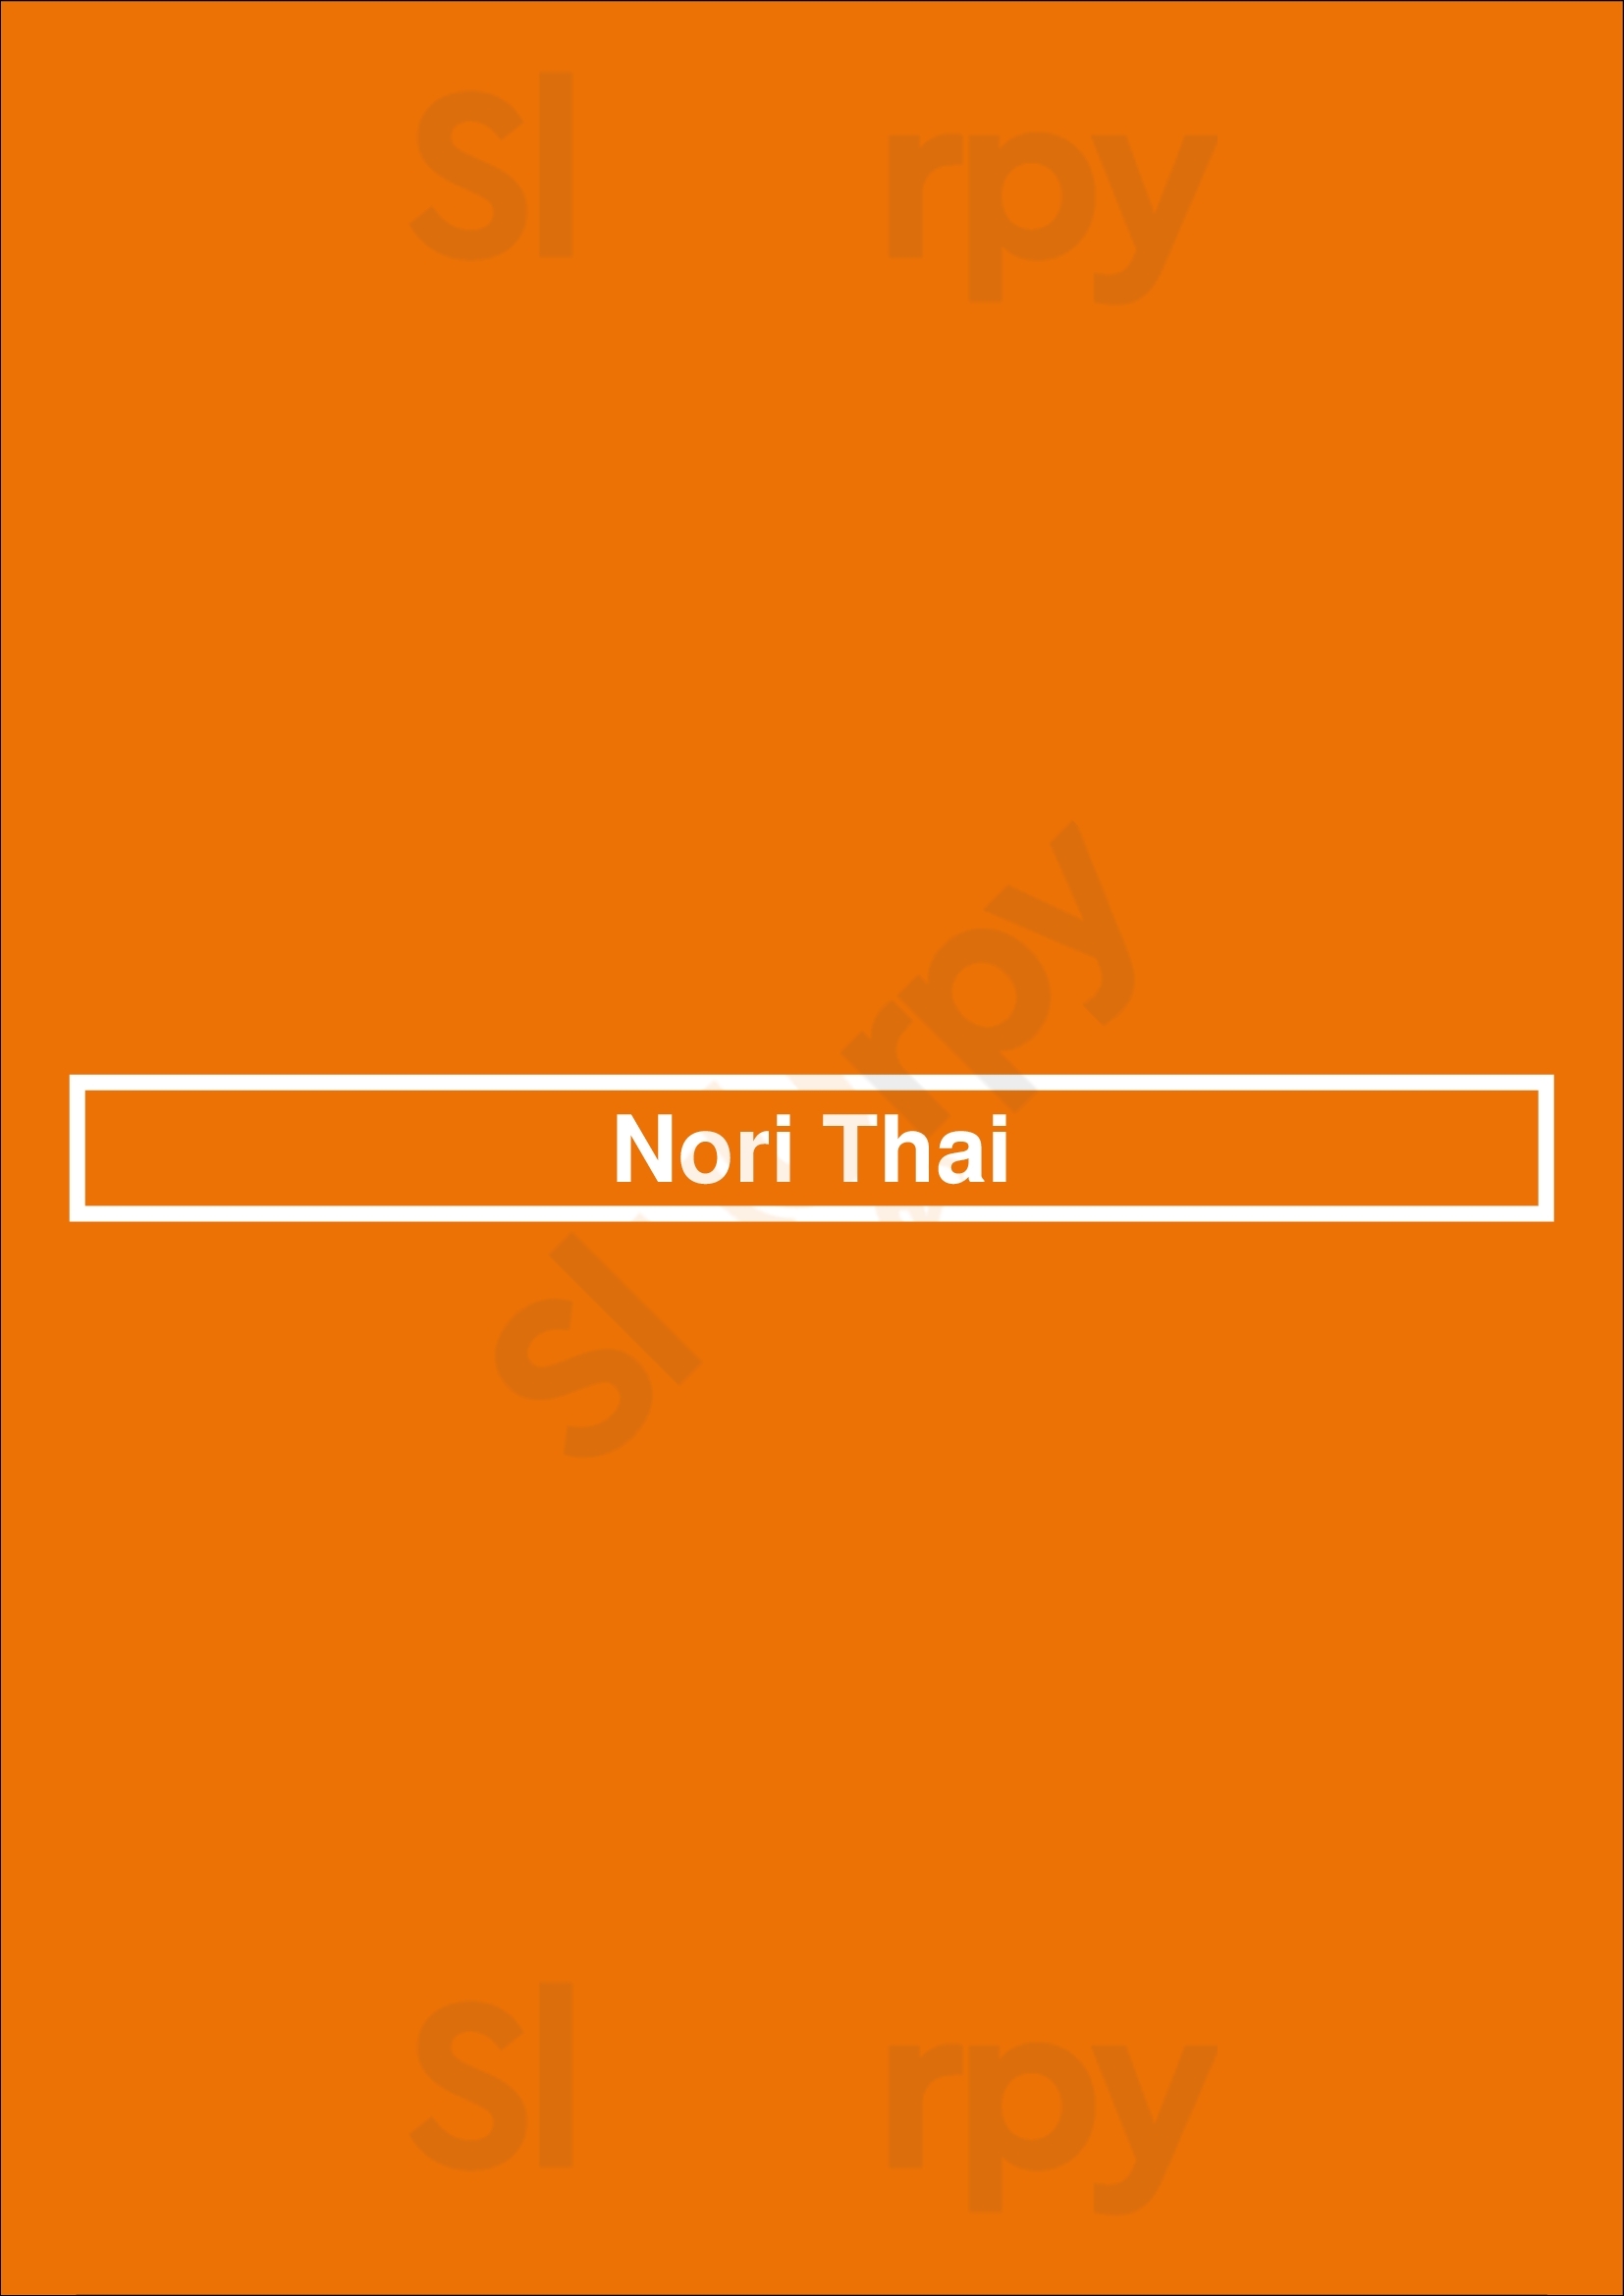 Nori Thai Birmingham Menu - 1